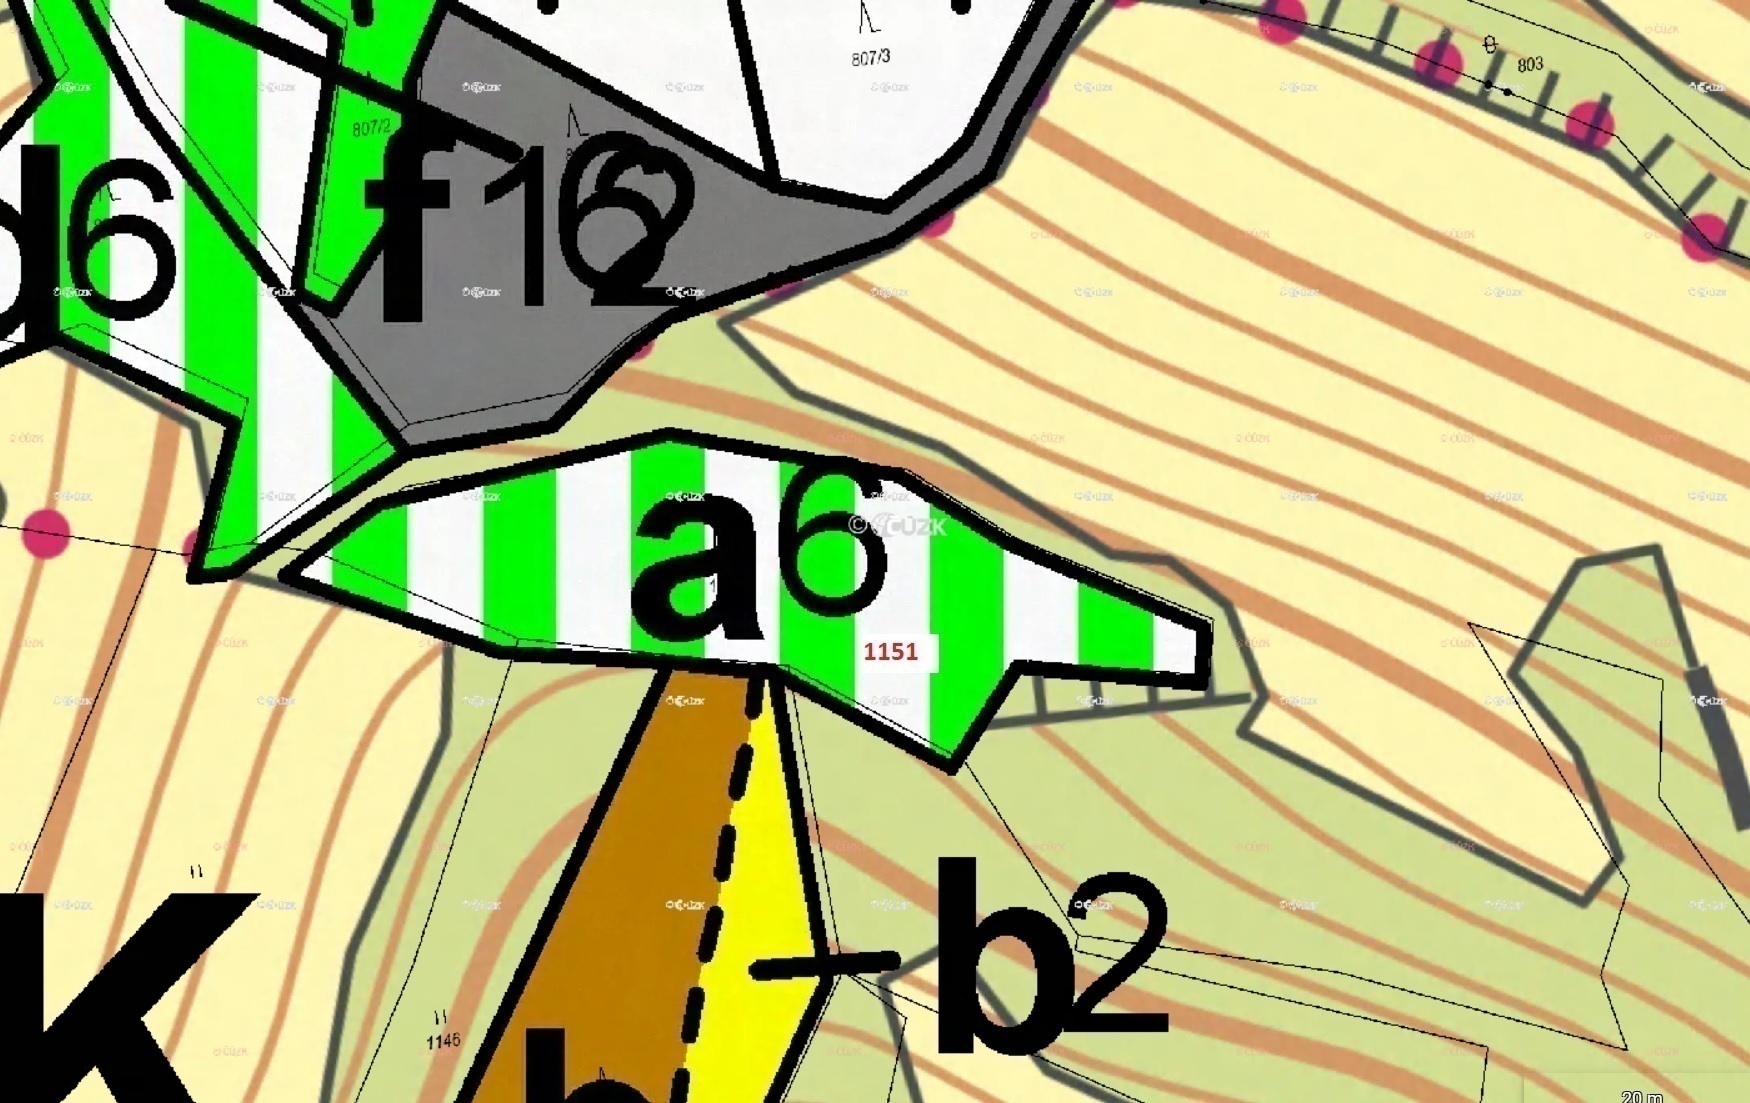 Lesní pozemek o výměře 2 293 m2, podíl 1/1, k.ú. Setěchovice, okres Prachatice